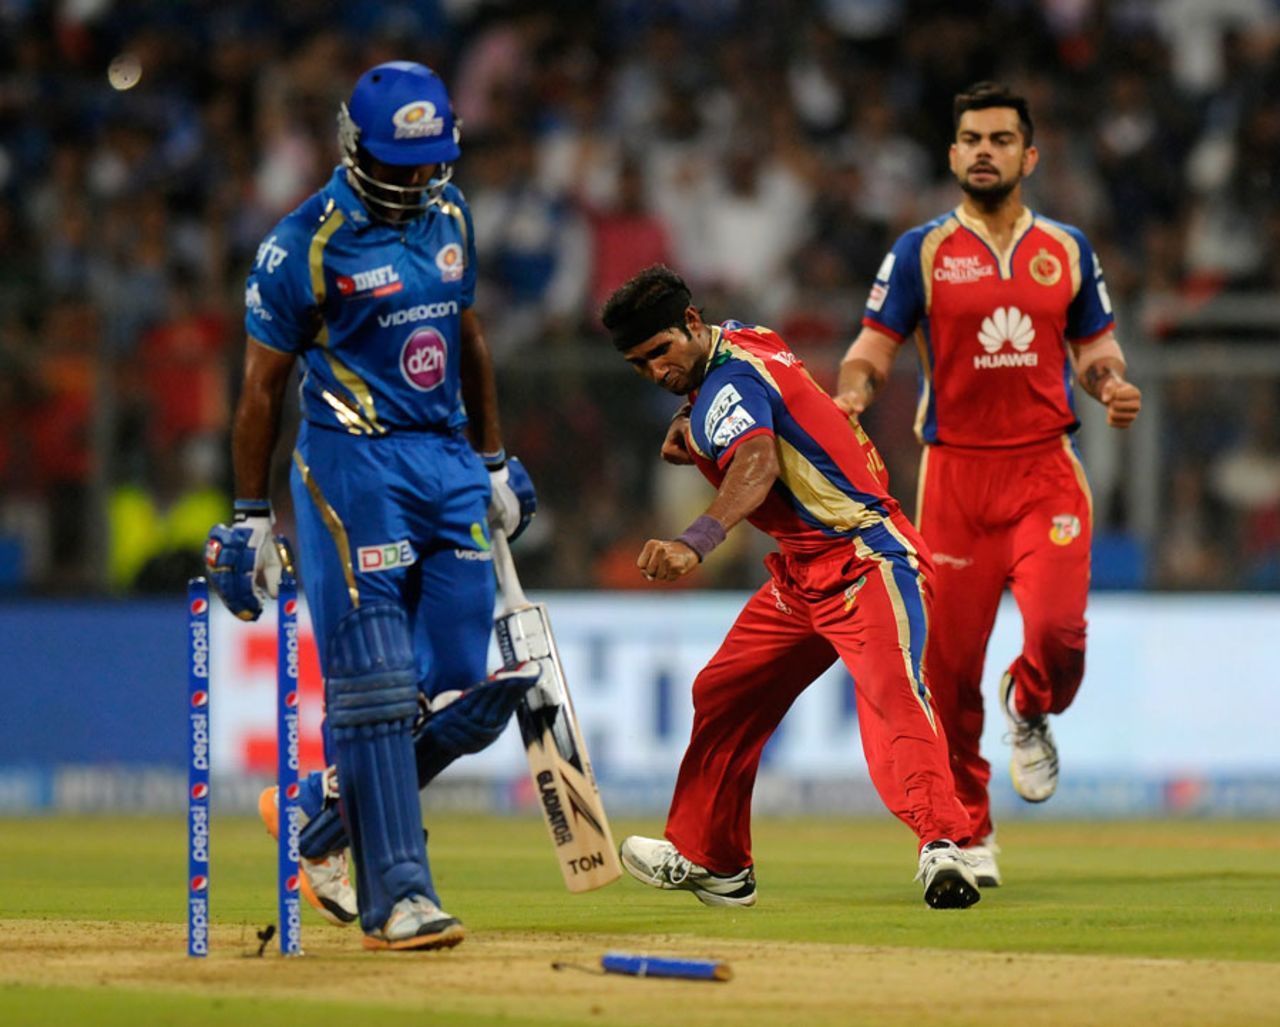 Ashok Dinda burst through the defences of Ambati Rayudu, Mumbai Indians v Royal Challengers Bangalore, IPL 2014, Mumbai, May 6, 2014